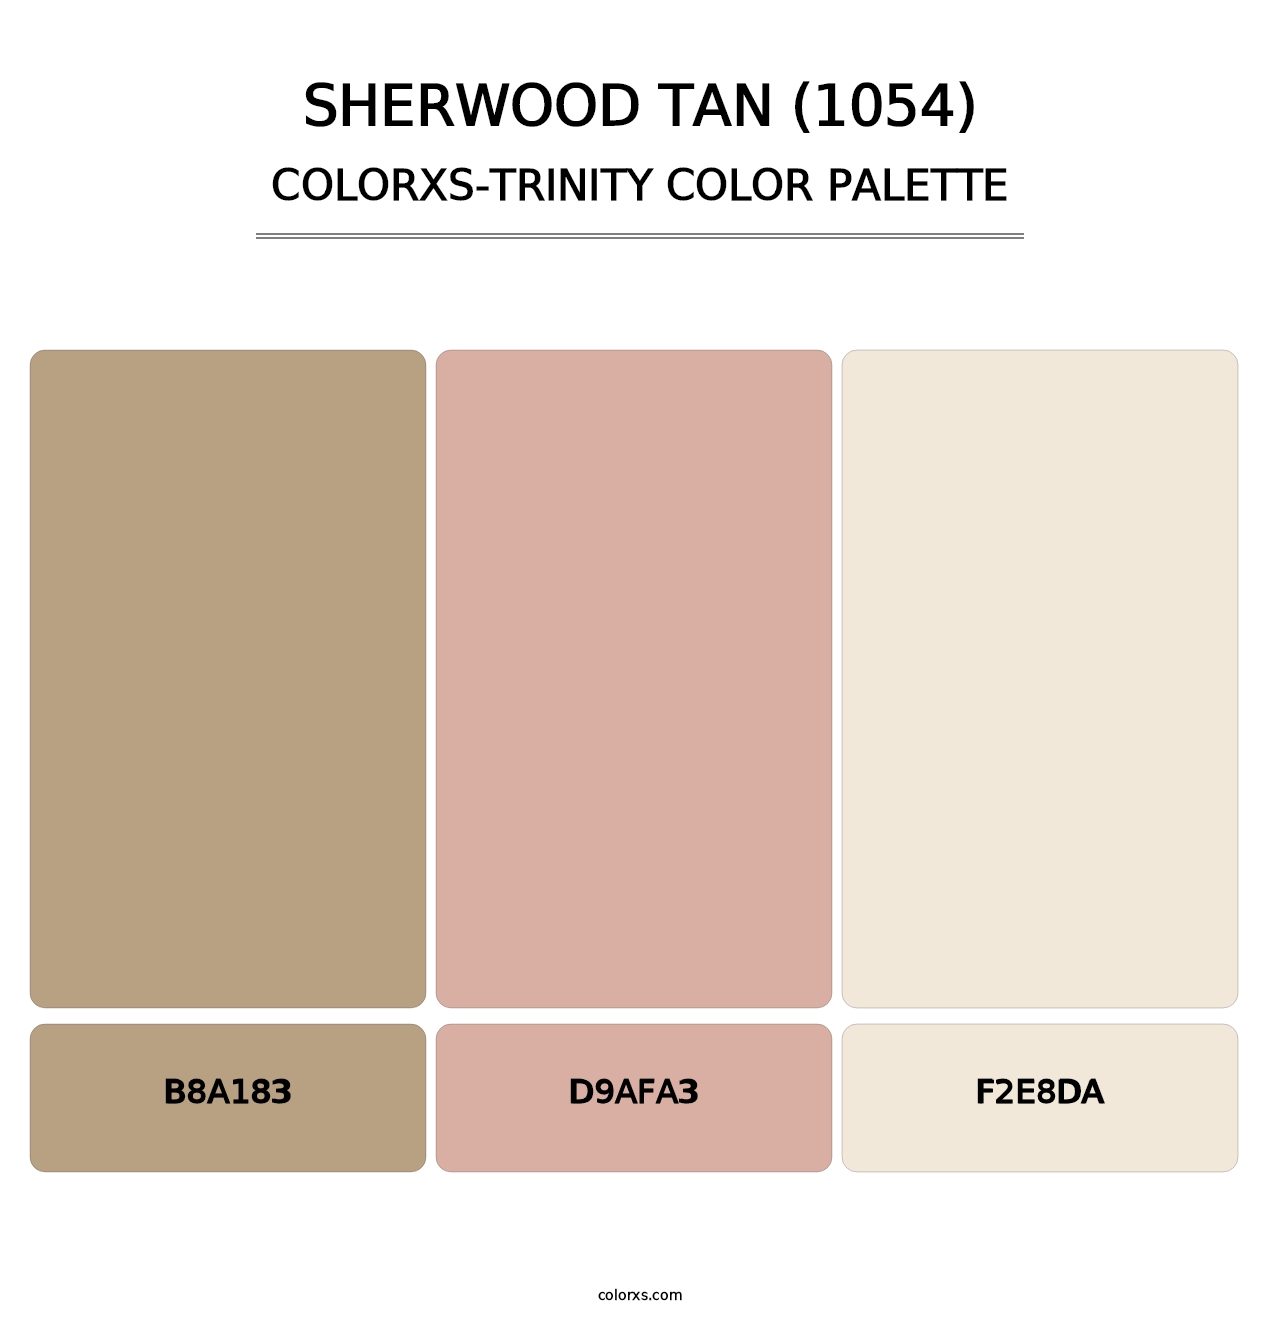 Sherwood Tan (1054) - Colorxs Trinity Palette